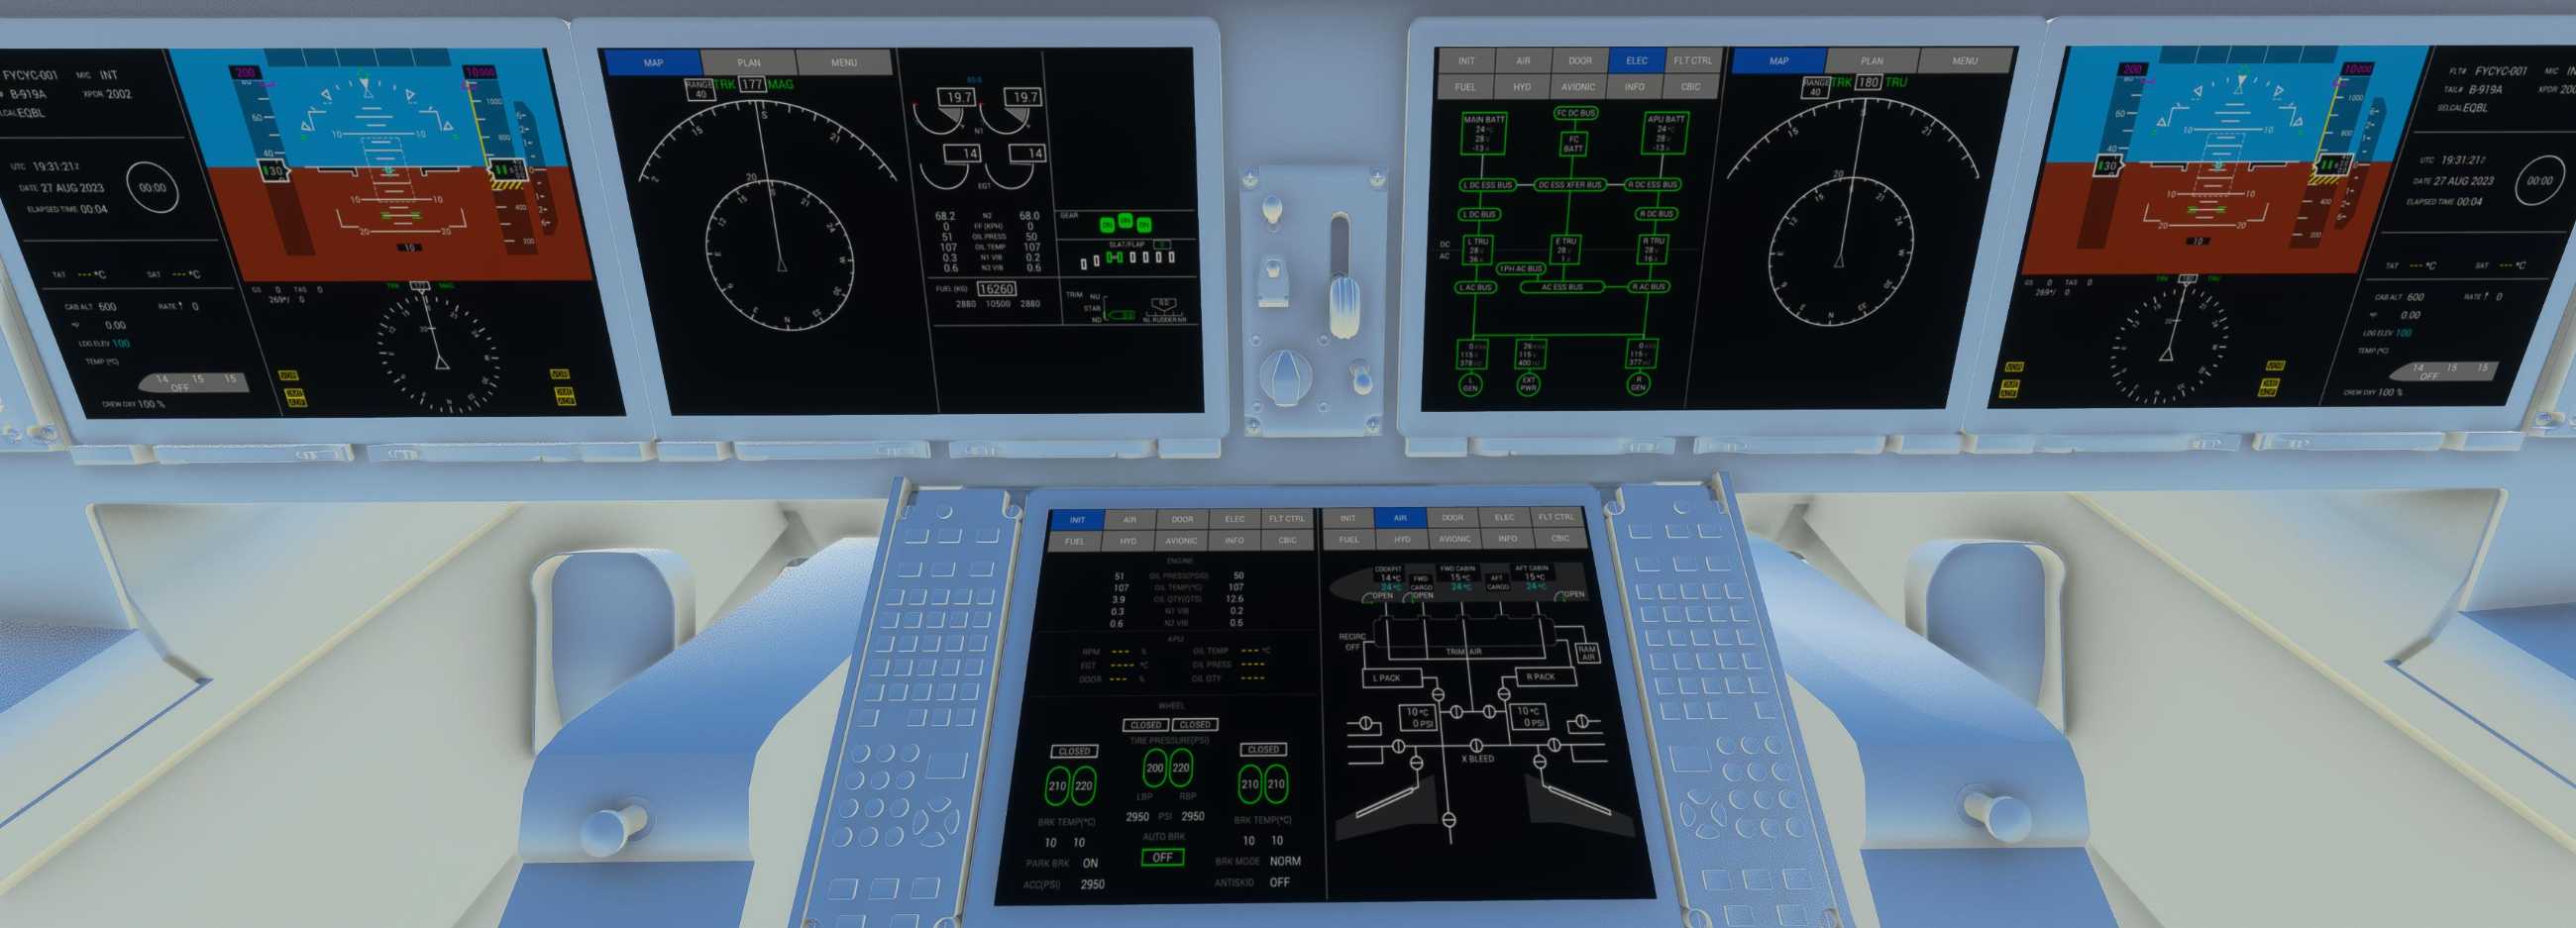 自研C919国产大飞机机模demo 微软模拟飞行演示2.0-3155 